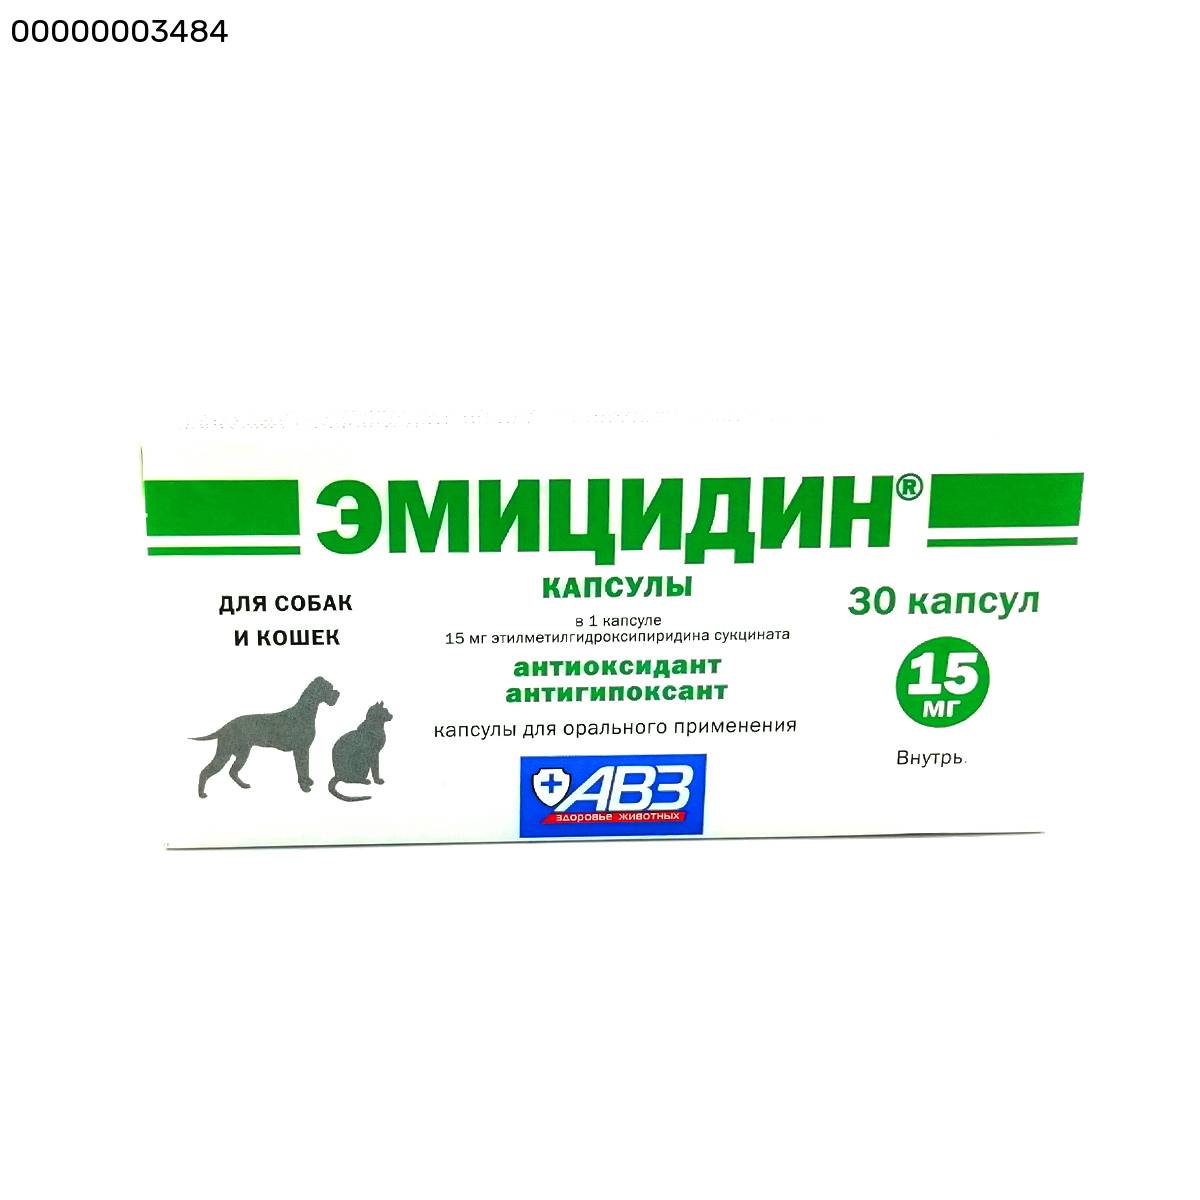 Эмицидин для собак: инструкция по применению, дозировка и побочные действия, противопоказания - kotiko.ru